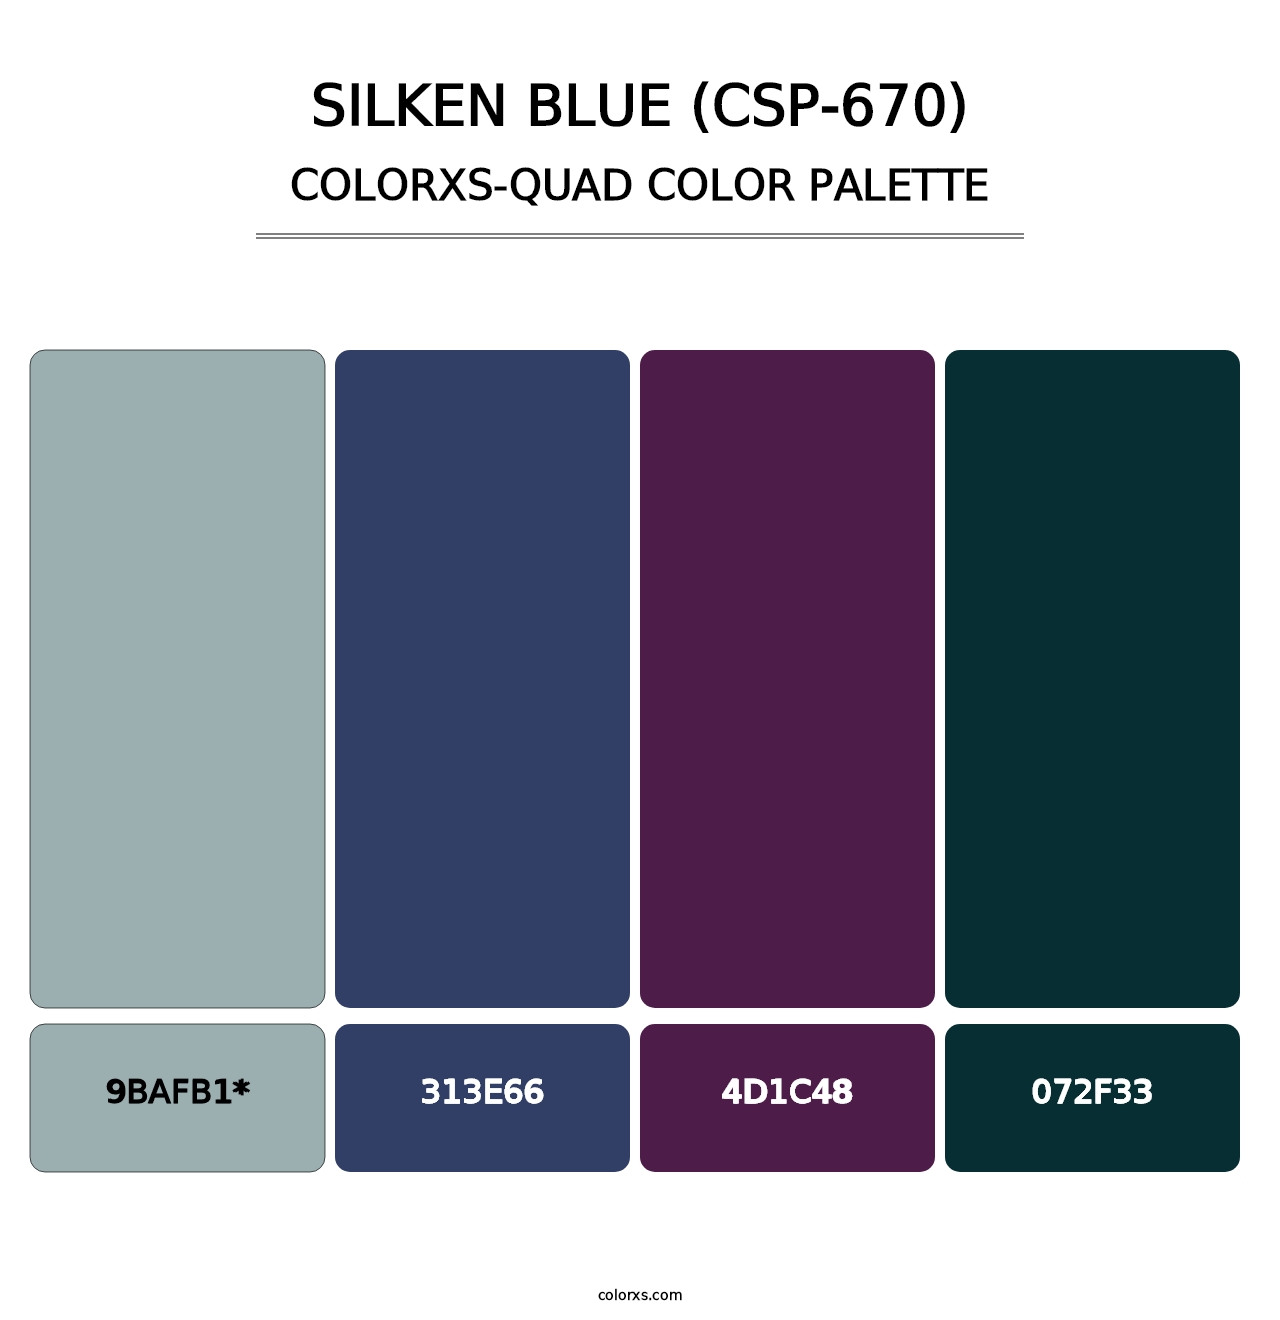 Silken Blue (CSP-670) - Colorxs Quad Palette